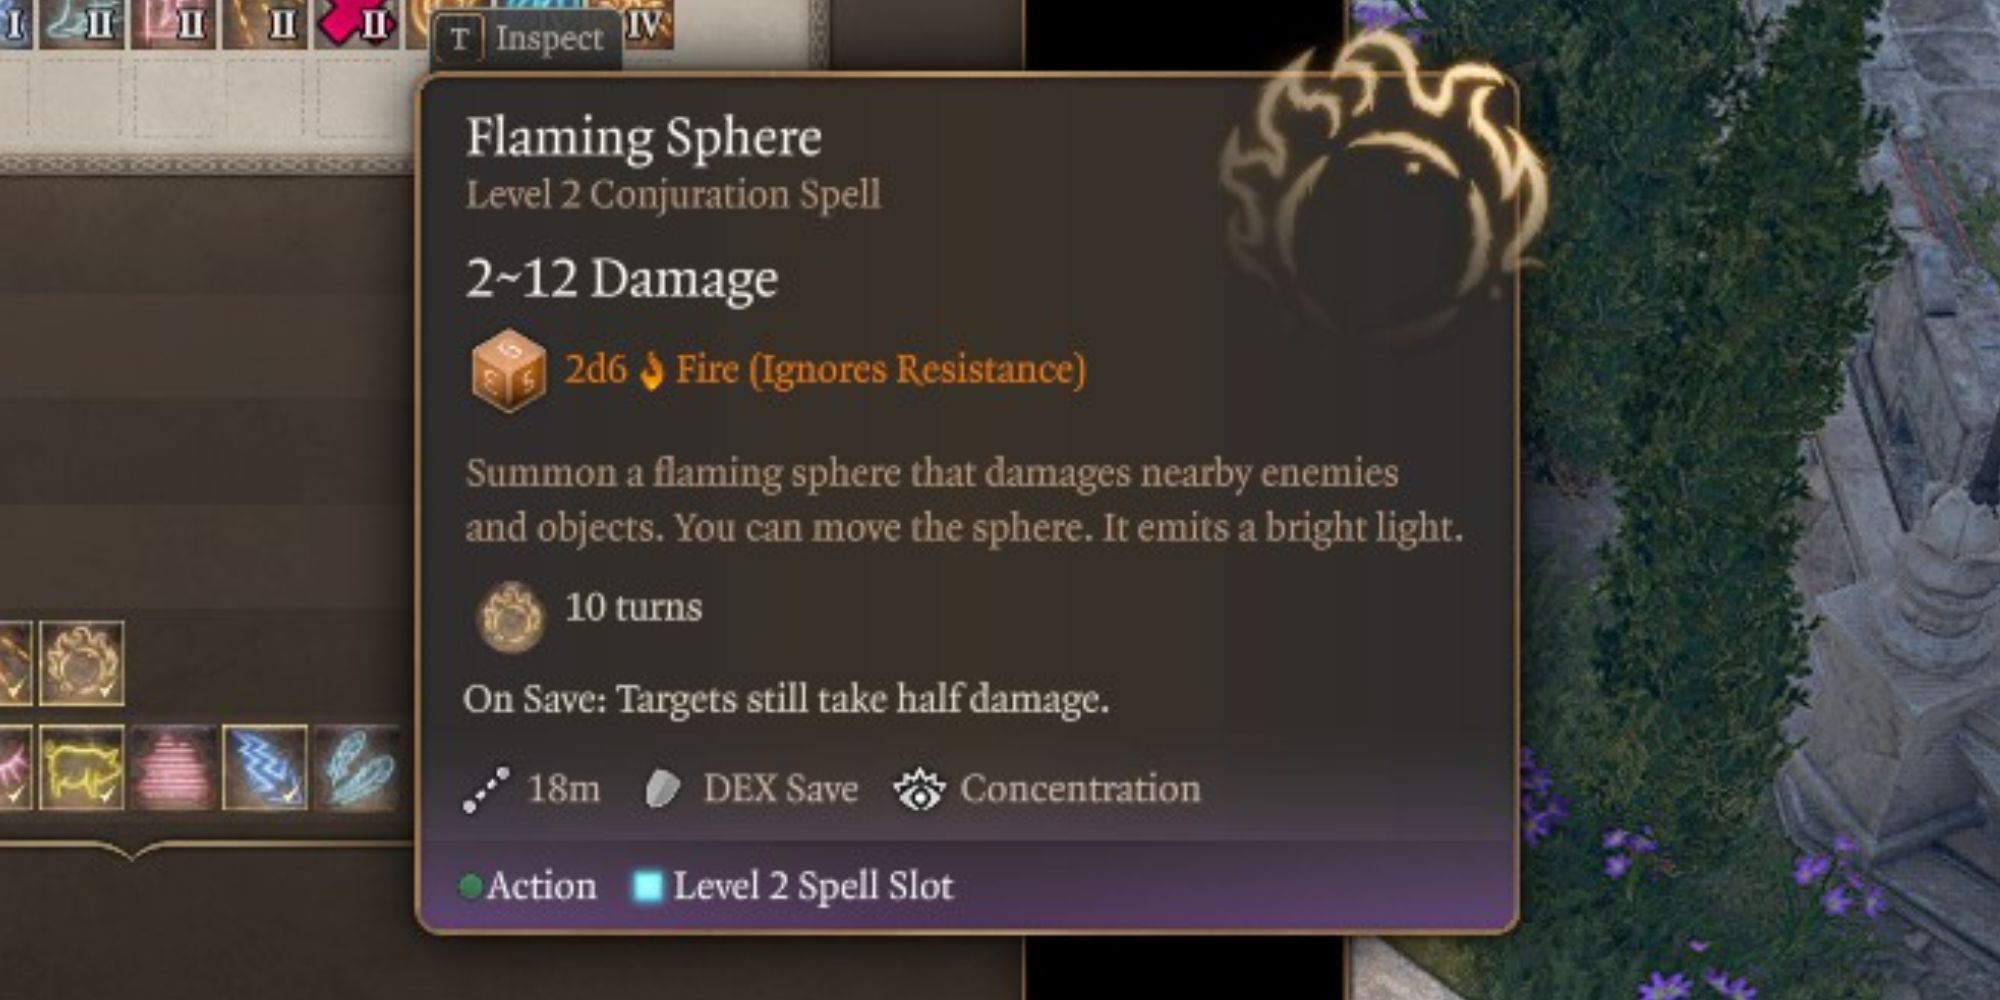 The Flaming Sphere spell in Baldur's Gate 3